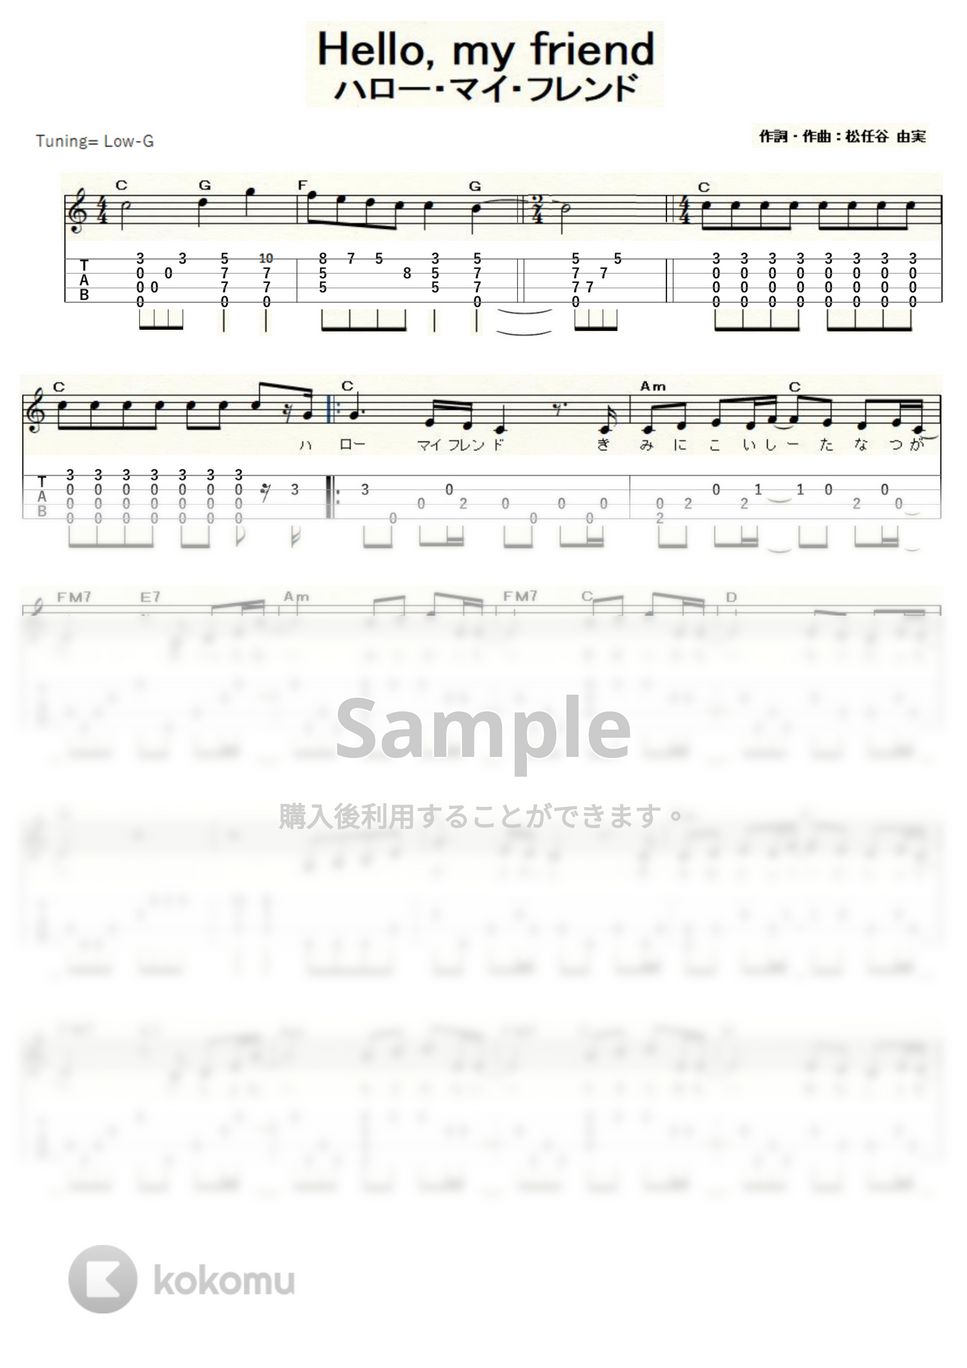 松任谷 由実 - Hello, my friend (ｳｸﾚﾚｿﾛ / Low-G / 中級) by ukulelepapa